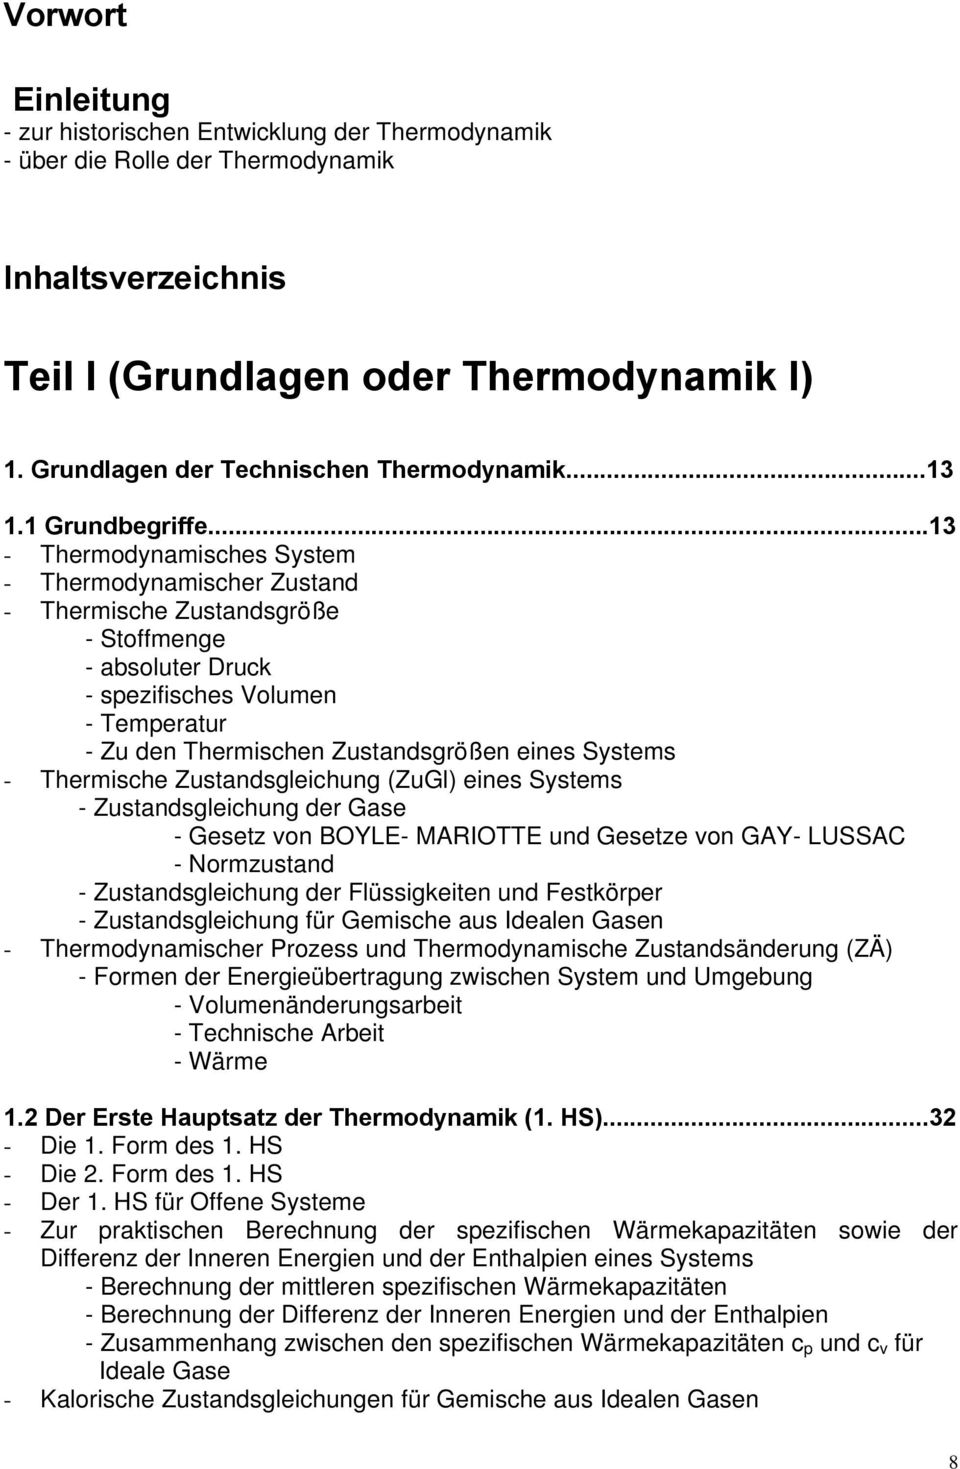 ..13 - Thermodynamisches System - Thermodynamischer Zustand - Thermische Zustandsgröße - Stoffmenge - absoluter Druck - spezifisches Volumen - Temperatur - Zu den Thermischen Zustandsgrößen eines